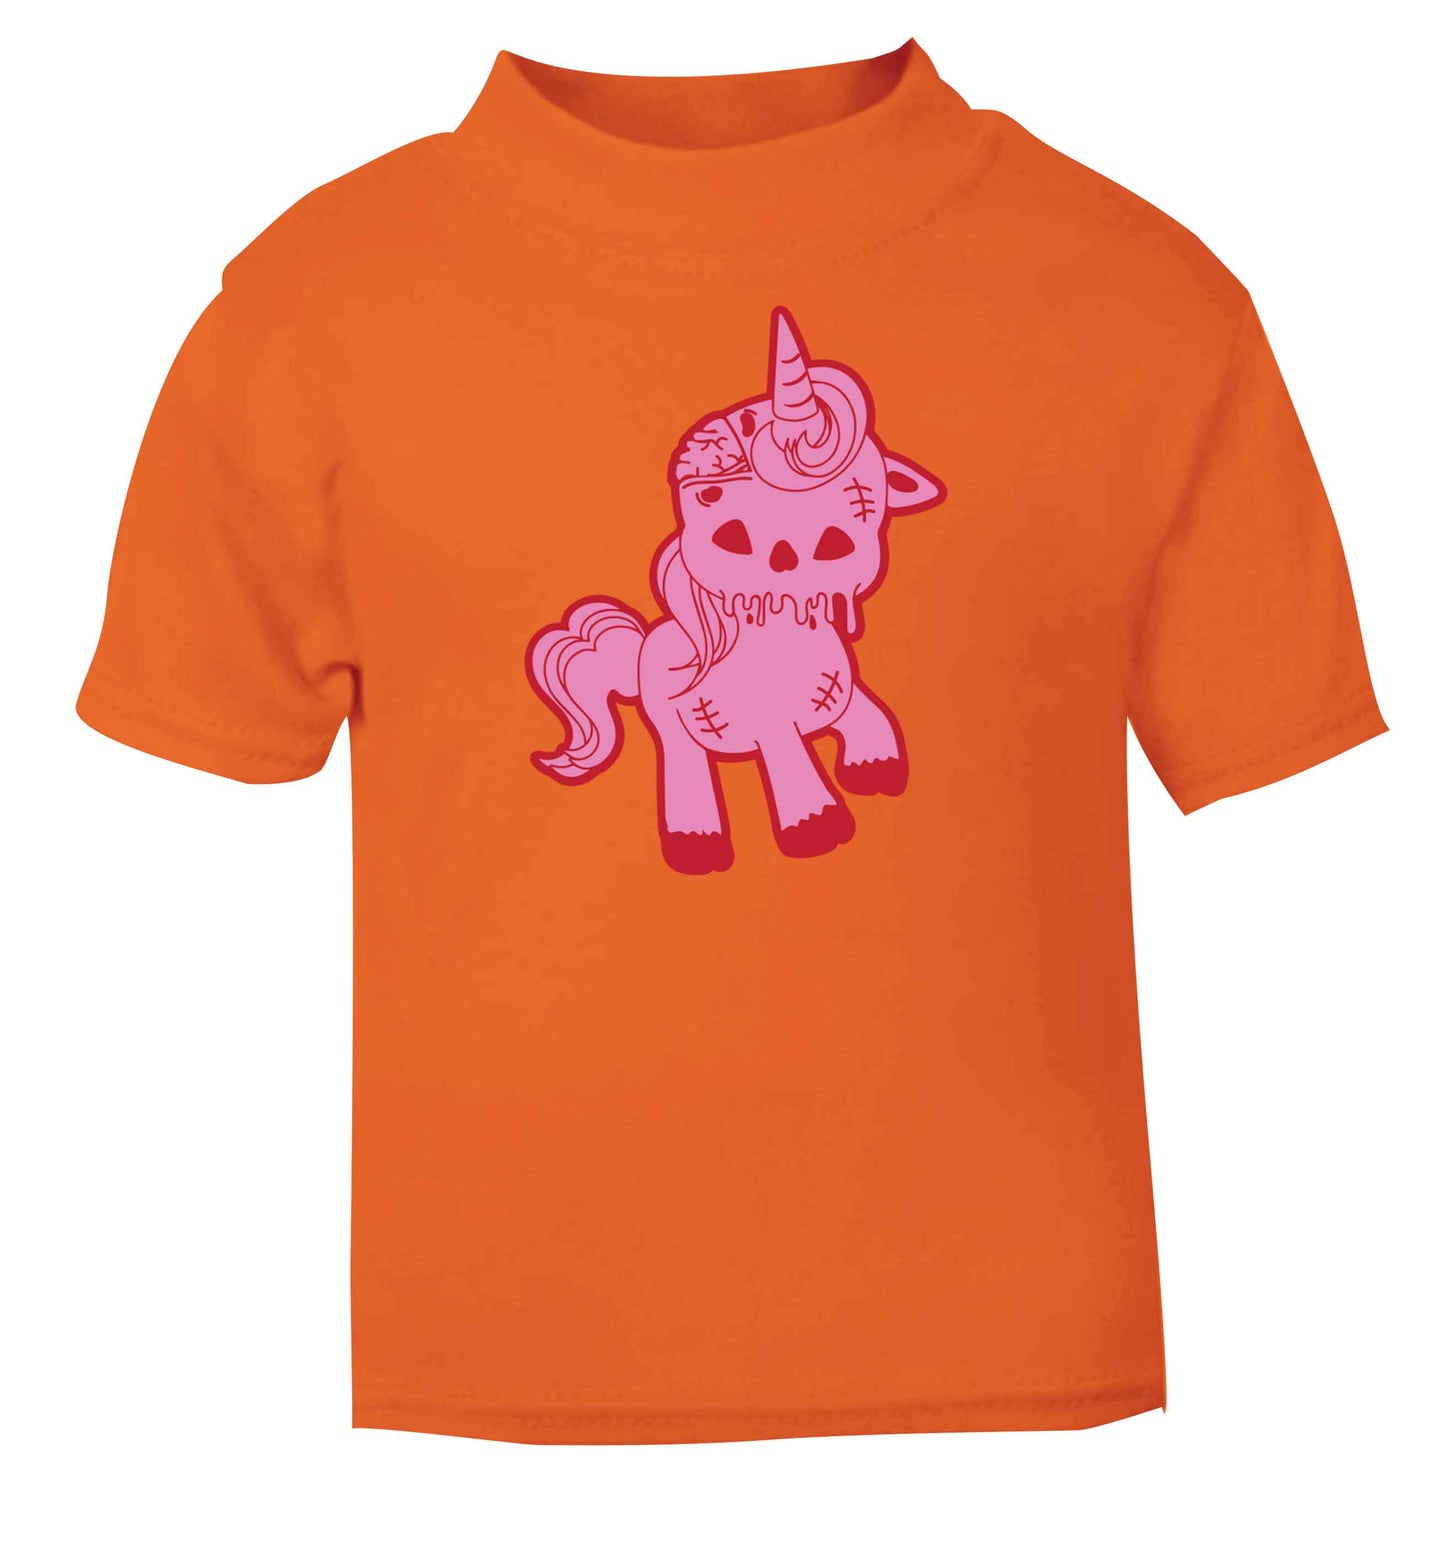 Zombie unicorn zombiecorn orange baby toddler Tshirt 2 Years